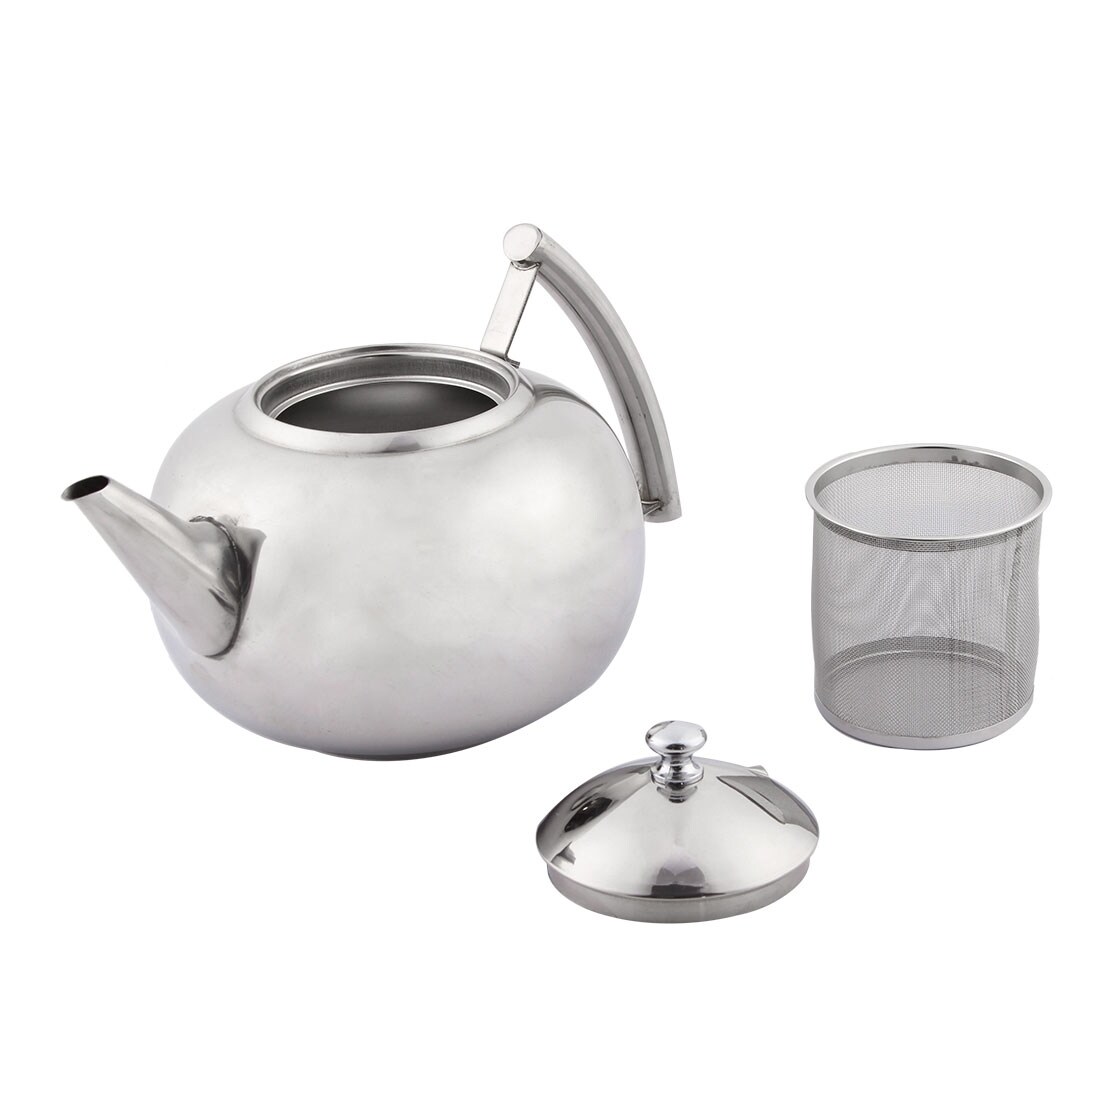 2000ml Glass Teapot Tea Kettles Pot with Infyser Boiling Water Kattle Teapot